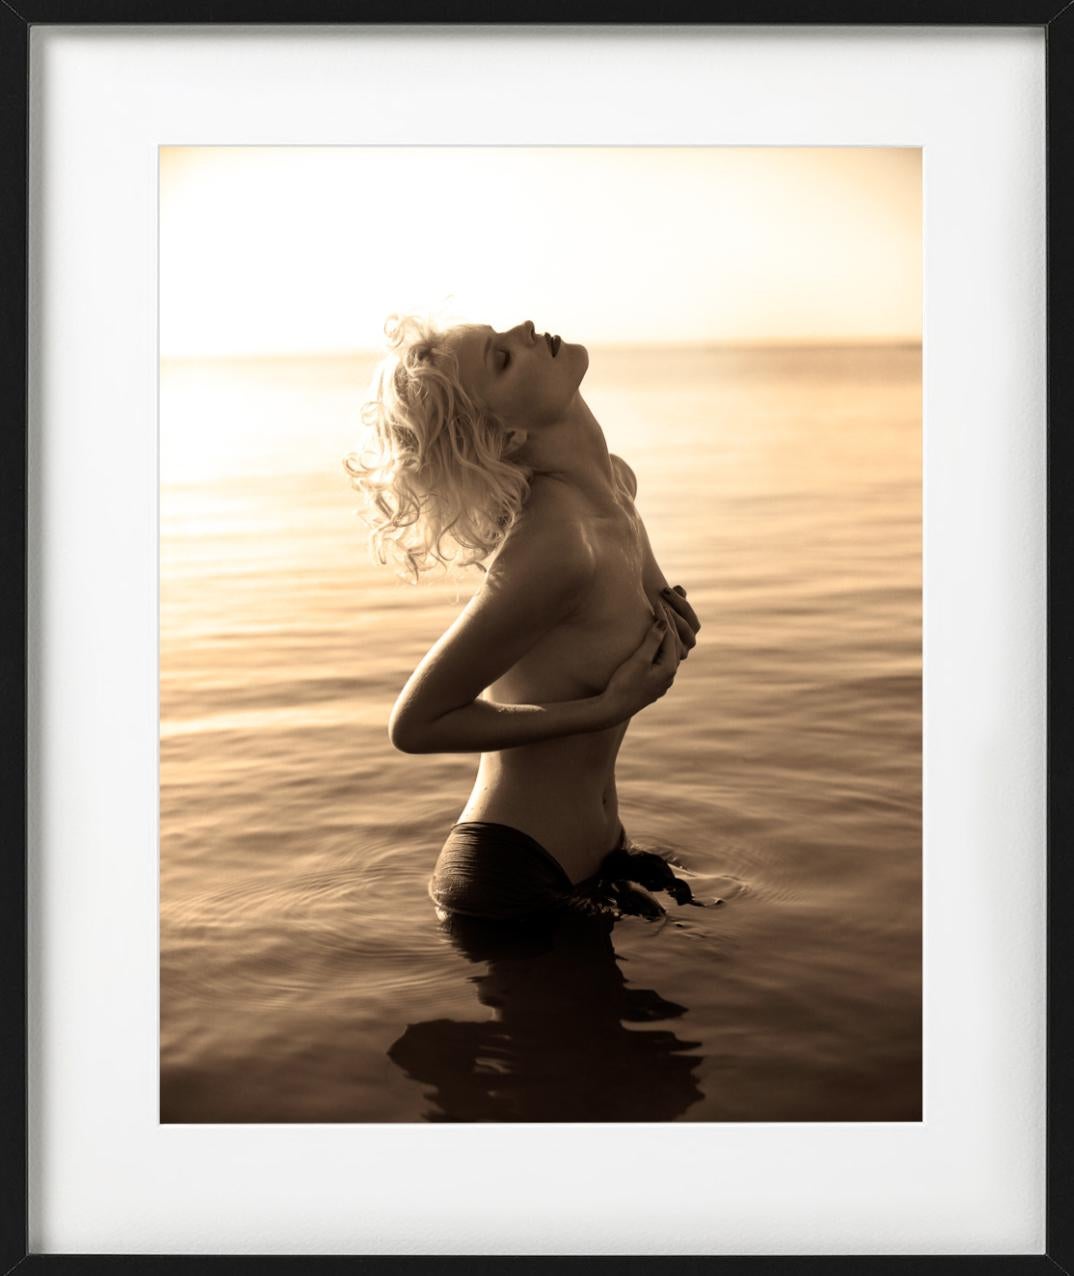 Eva Herzigova, Delano Hotel - nude model in water, fine art photography, 1996 - Black Color Photograph by Sante D´ Orazio